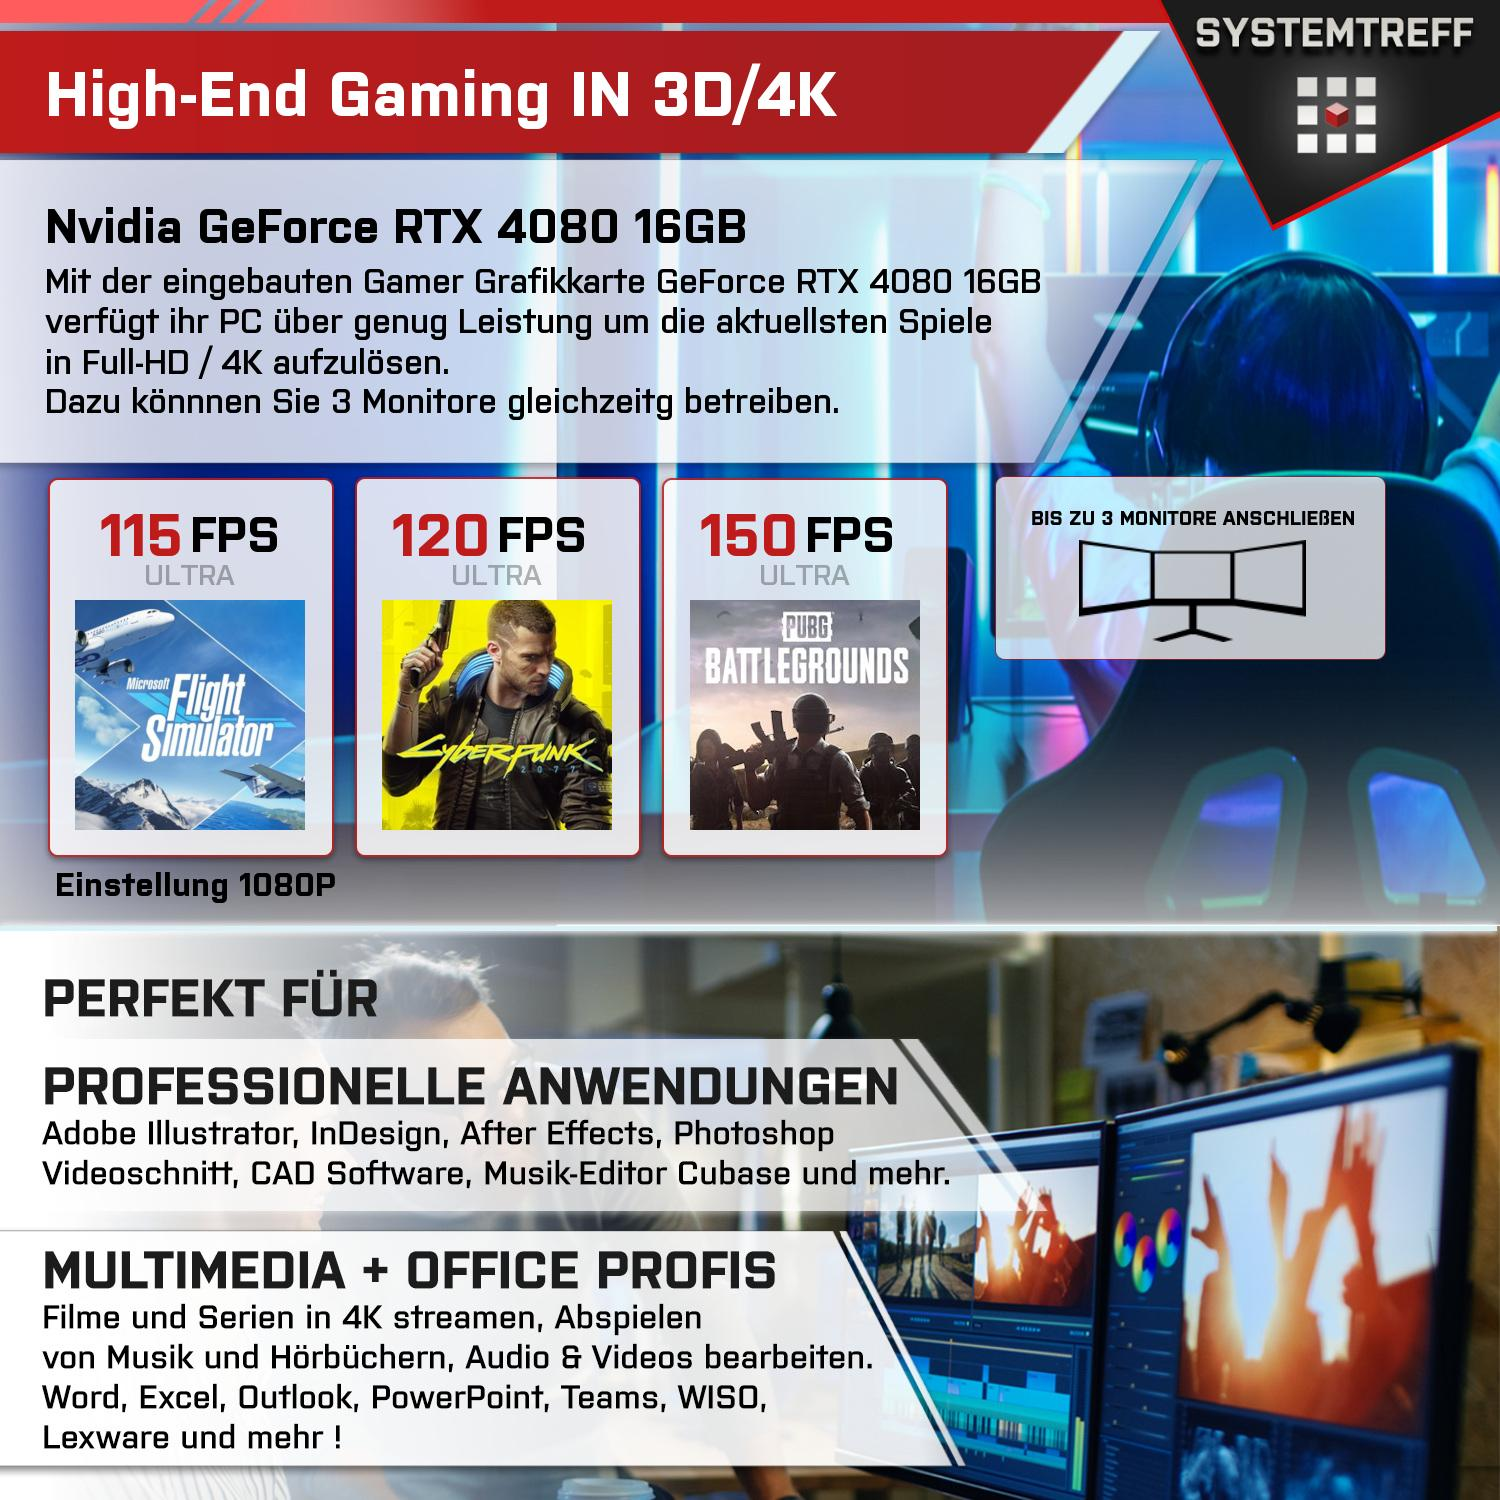 SYSTEMTREFF Gaming Komplett GDDR6, PC mit GB 4080 RTX mSSD, 16GB Ryzen GB Nvidia 9 Prozessor, 16 32 7900X, 7900X GeForce AMD Komplett GB RAM, 2000